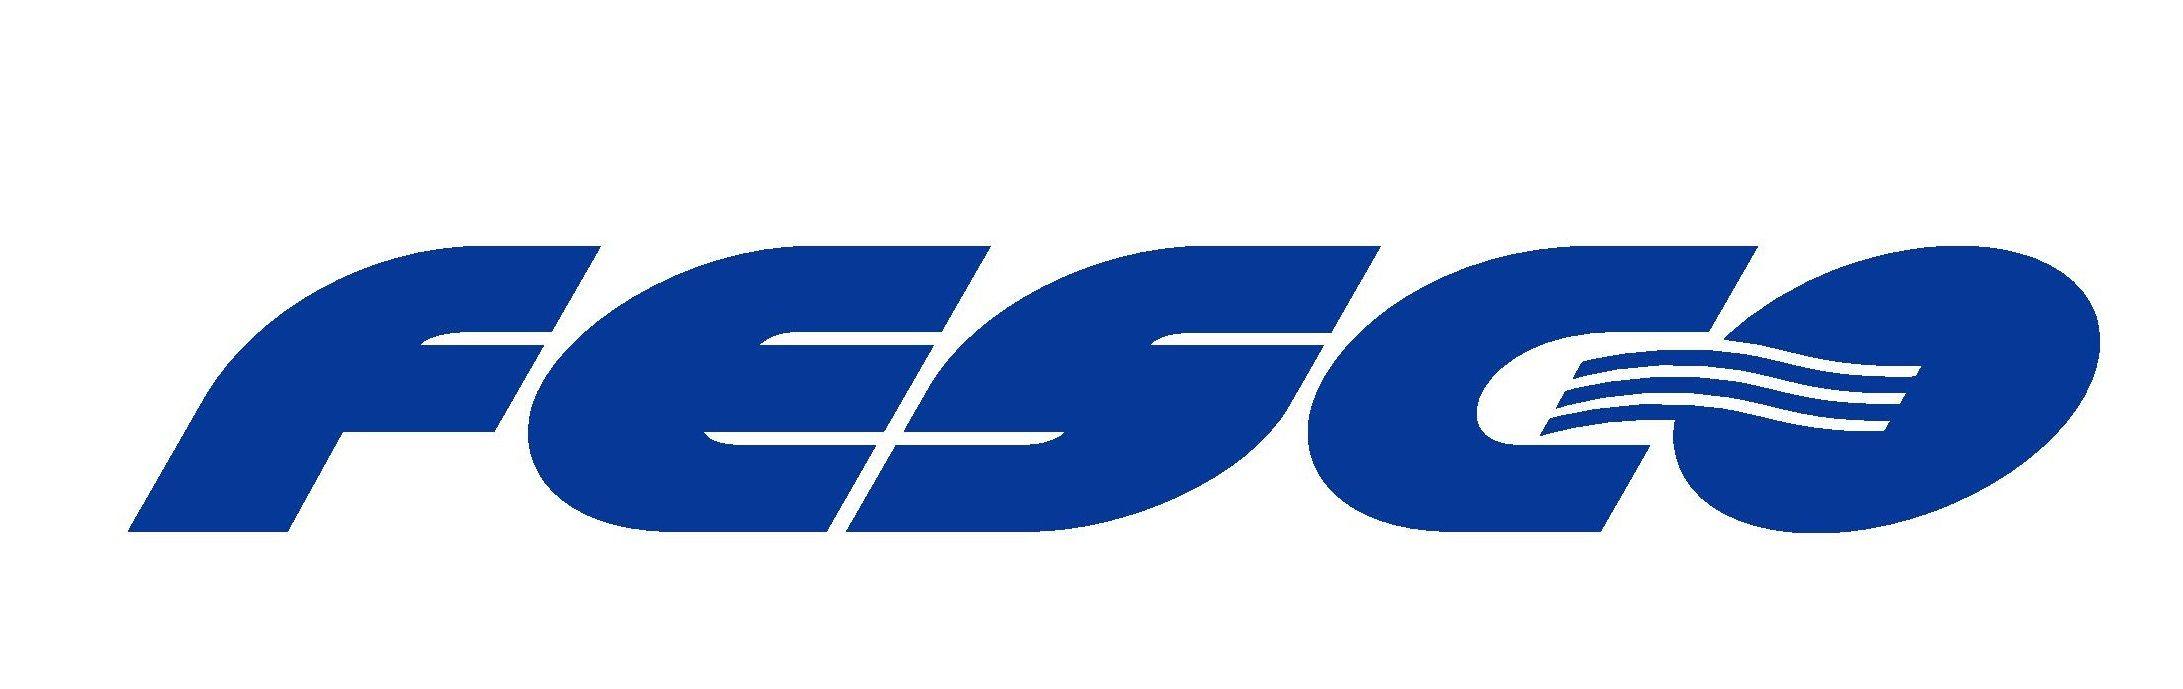 FESCO Logo - Questionnaire for FESCO Business Lunch Participants FESCO 与您同行 ...